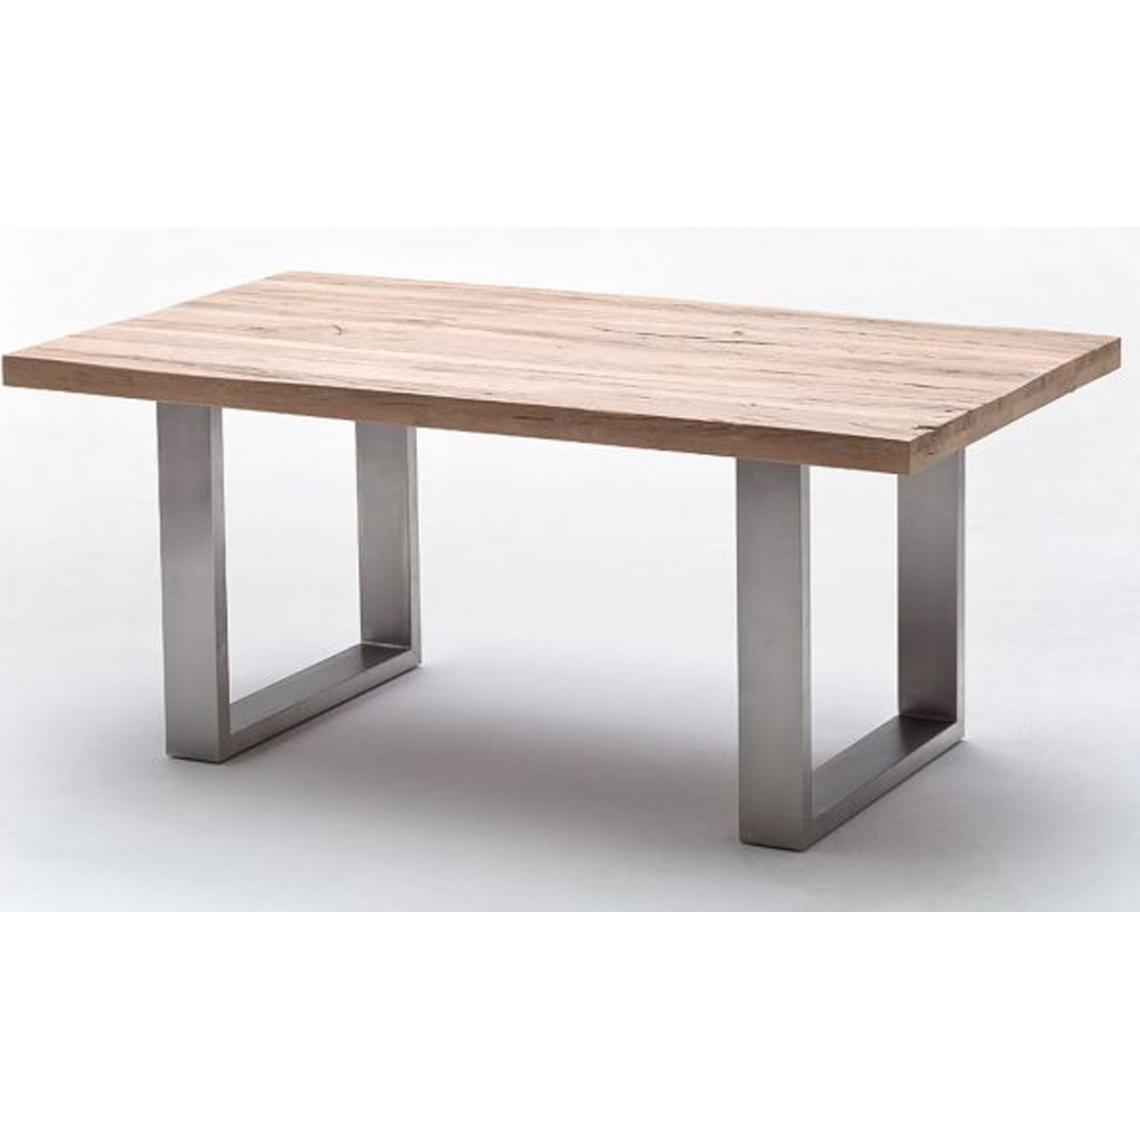 Pegane - Table à manger en chêne chaulé, laqué mat massif - L.260 x H.76 x P.100 cm -PEGANE- - Tables à manger